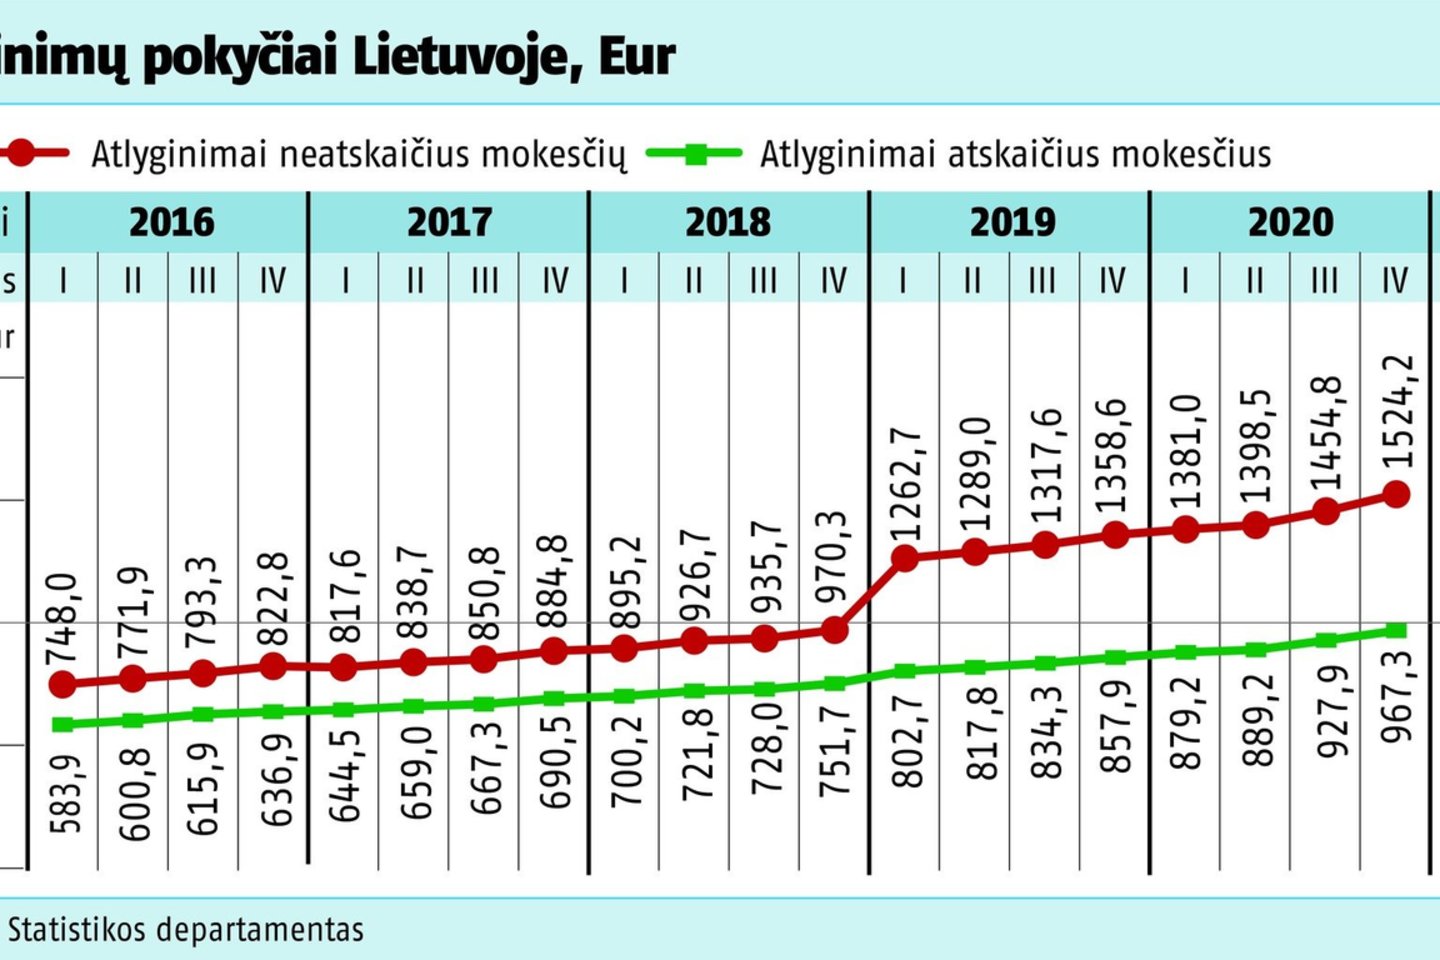  Atlyginimų pokyčiai Lietuvoje, Eur.